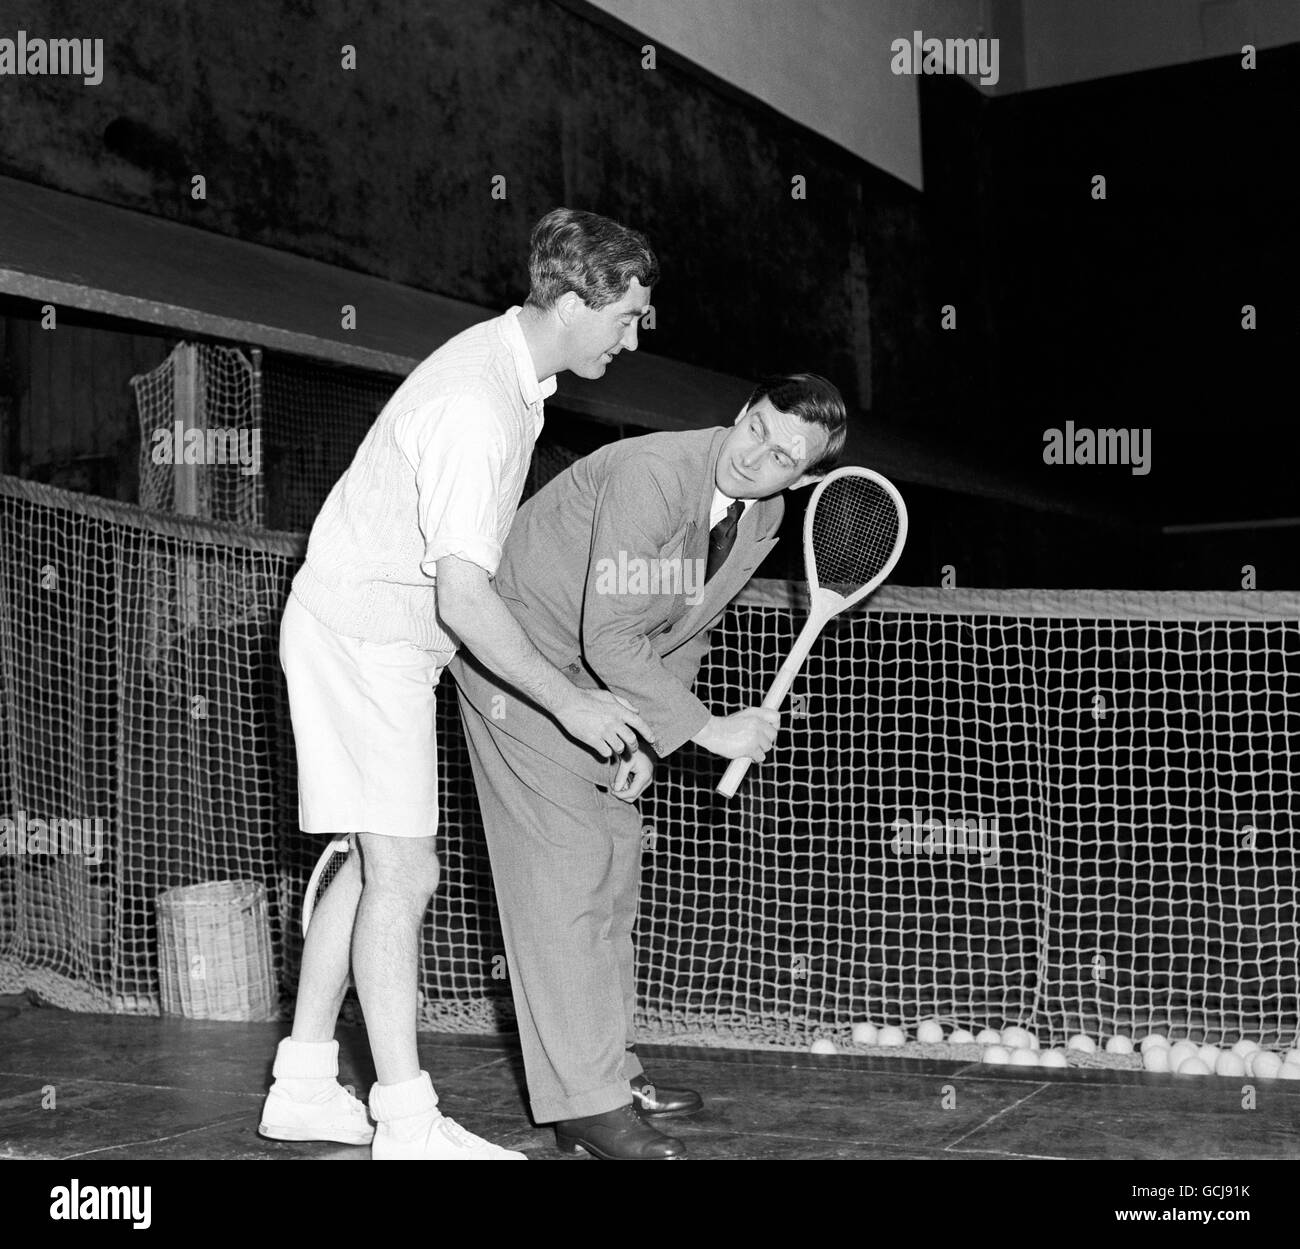 Storia del tennis immagini e fotografie stock ad alta risoluzione - Alamy